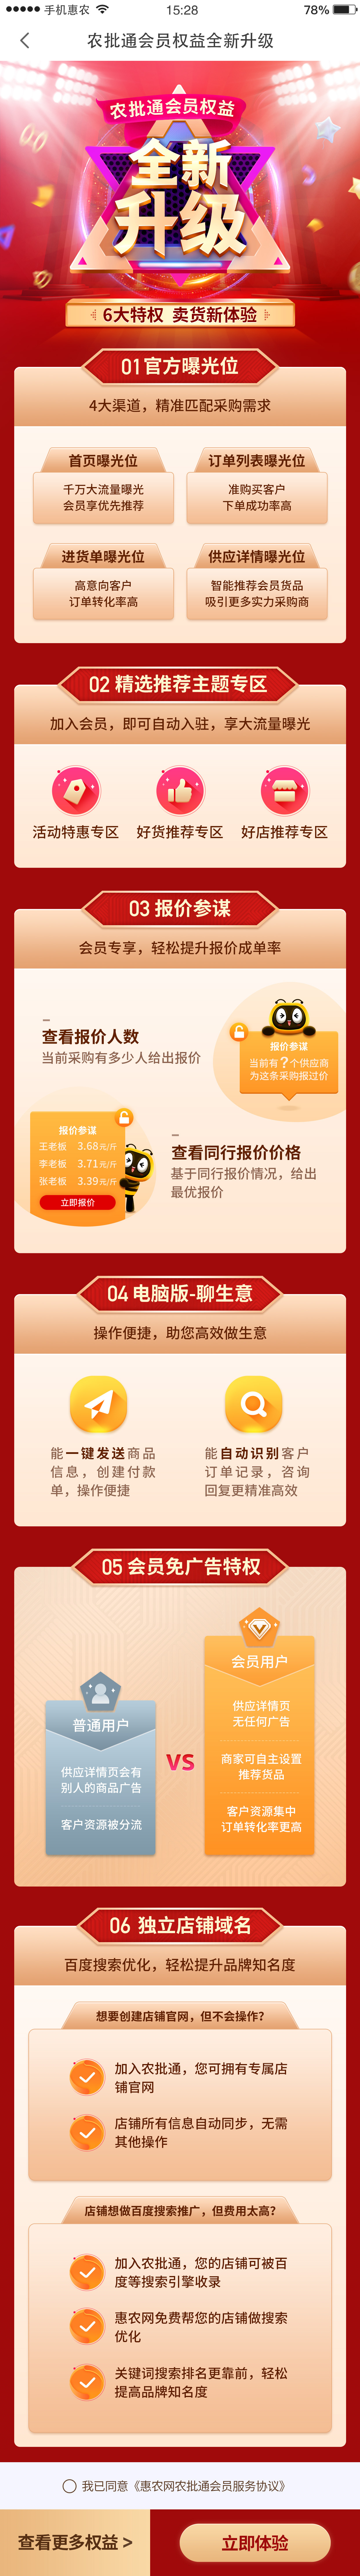 惠农网专题活动页面设计图0